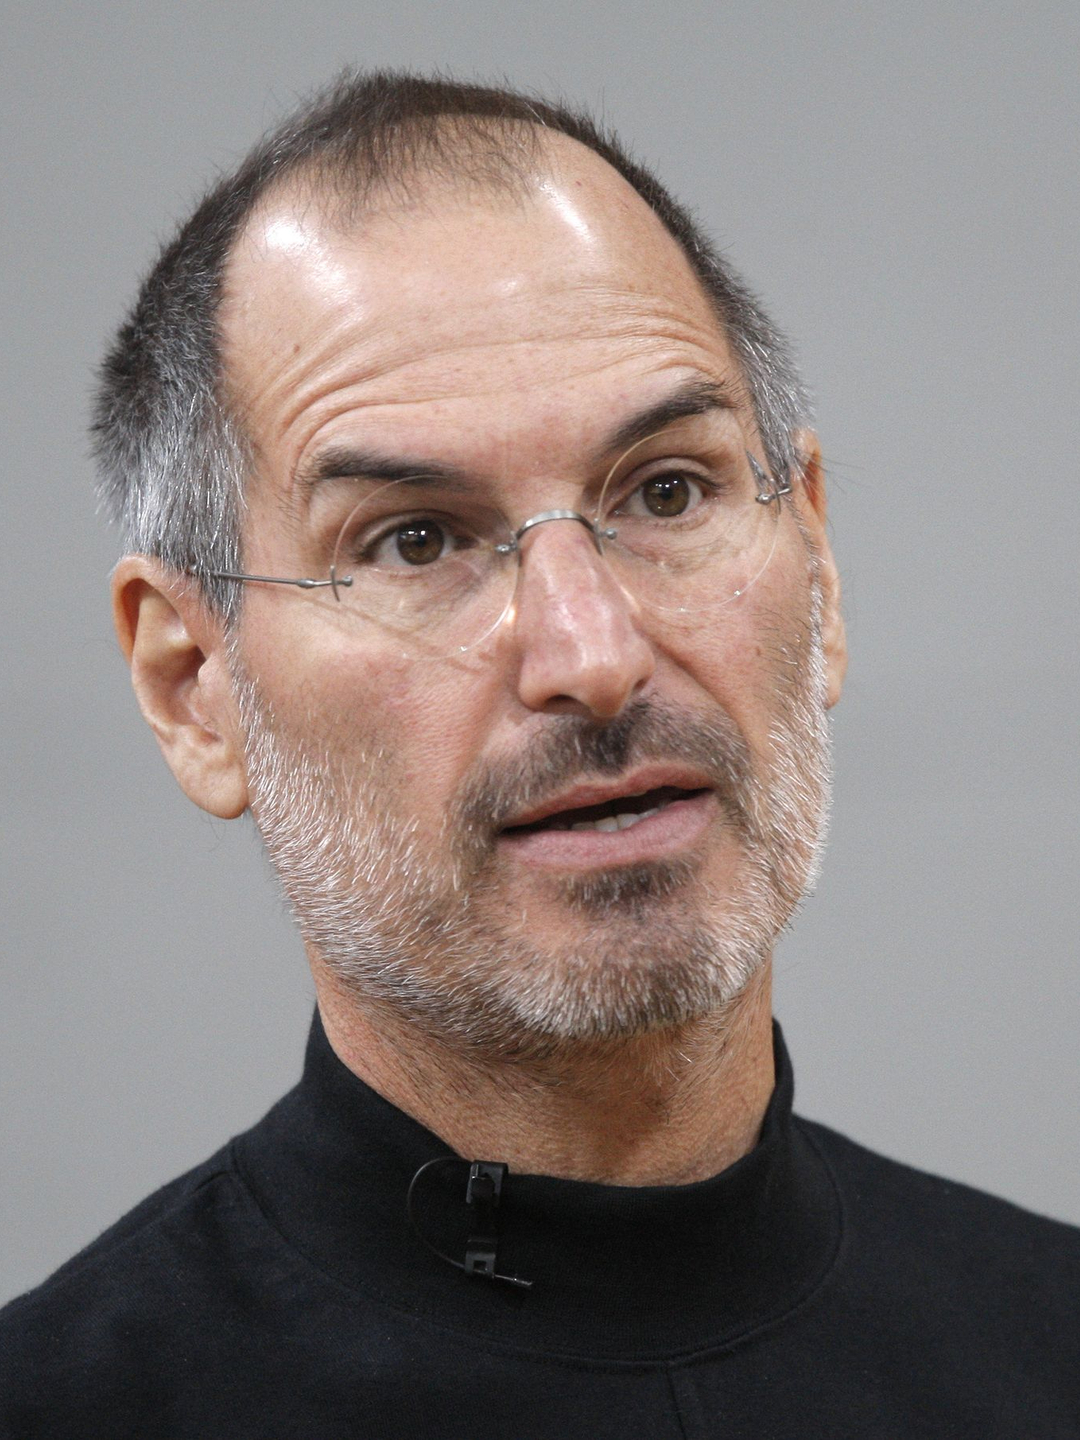 Steve Jobs teenage years